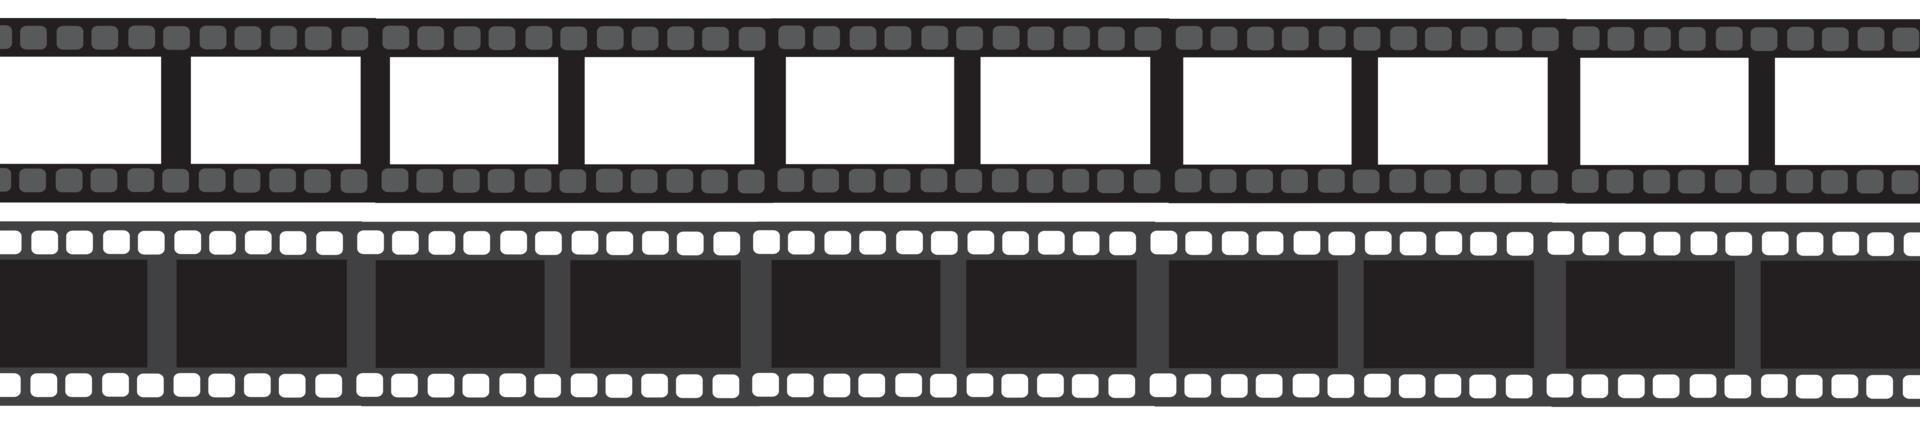 icona di striscia di pellicola isolato su sfondo trasparente. fotogramma nastro fotogramma striscia di pellicola, rotolo di striscia di pellicola video, illustrazione vettoriale